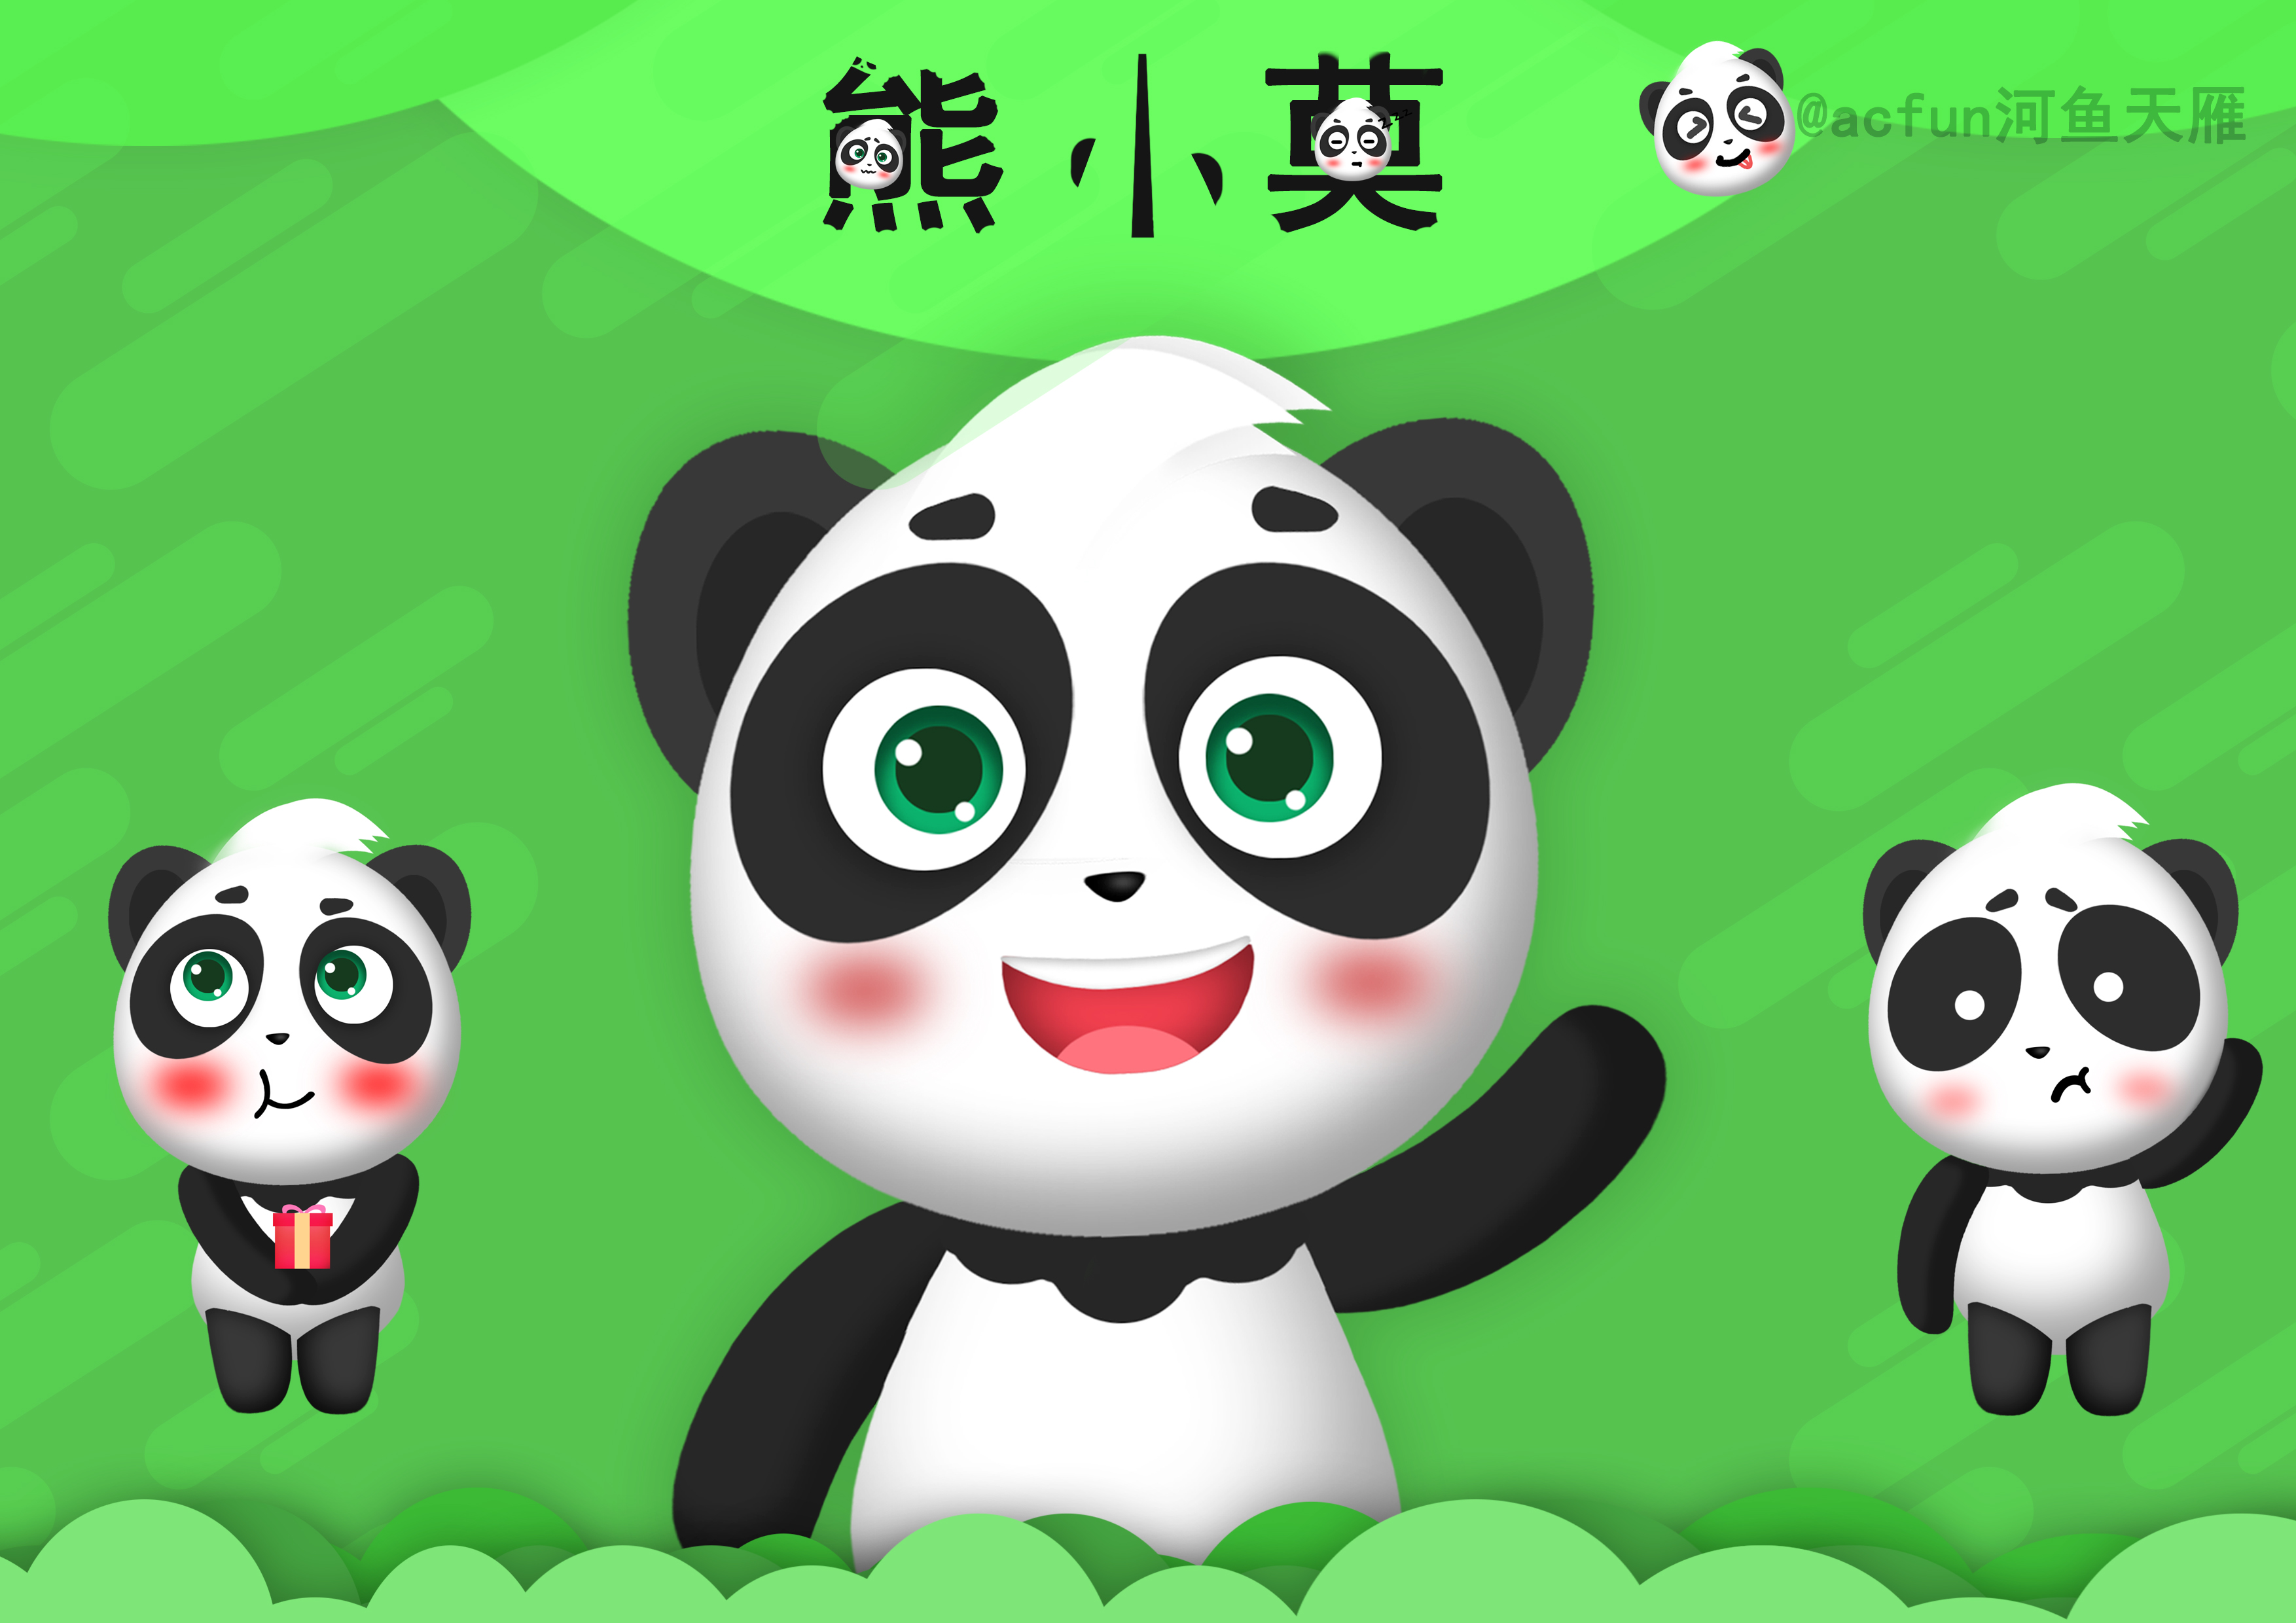 中国大熊猫国际形象—熊小莫(重新排版)